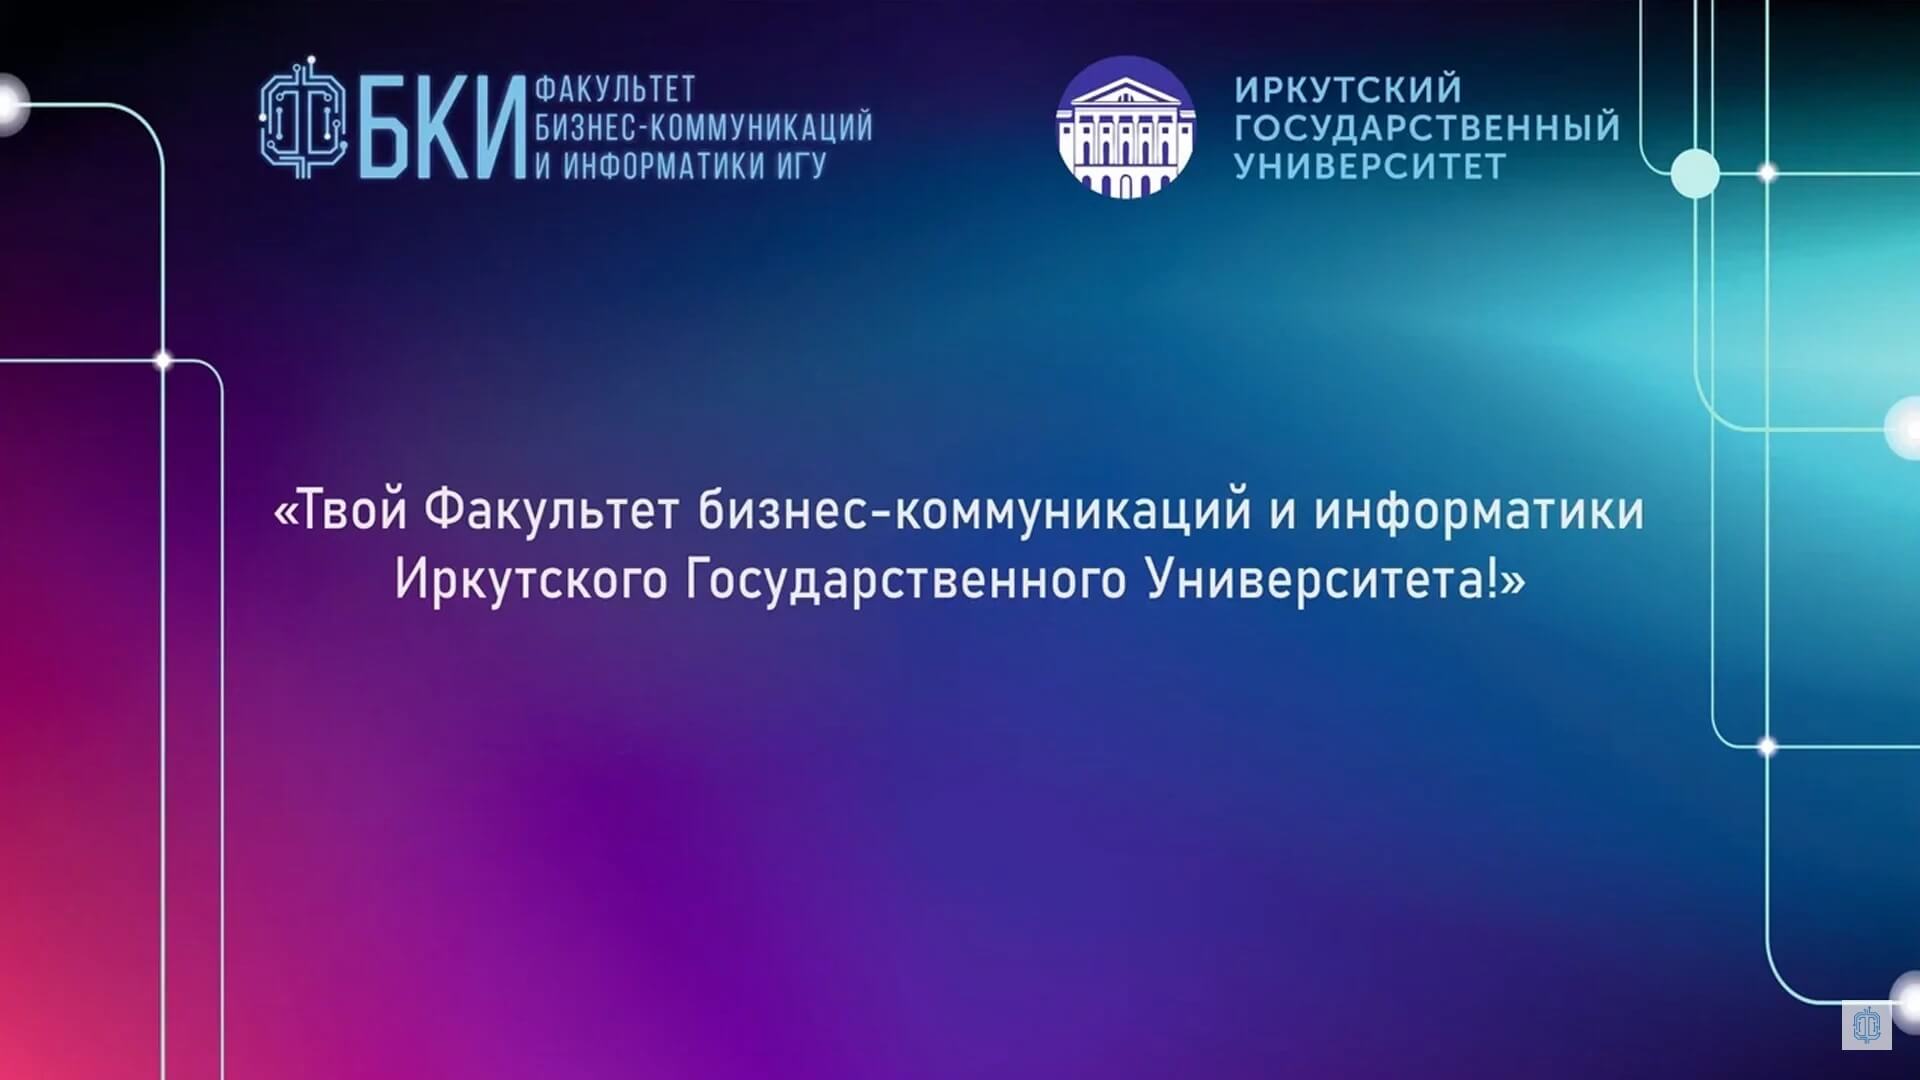 Твой факультет бизнес-коммуникаций и информатики Иркутского Государственного Университета!